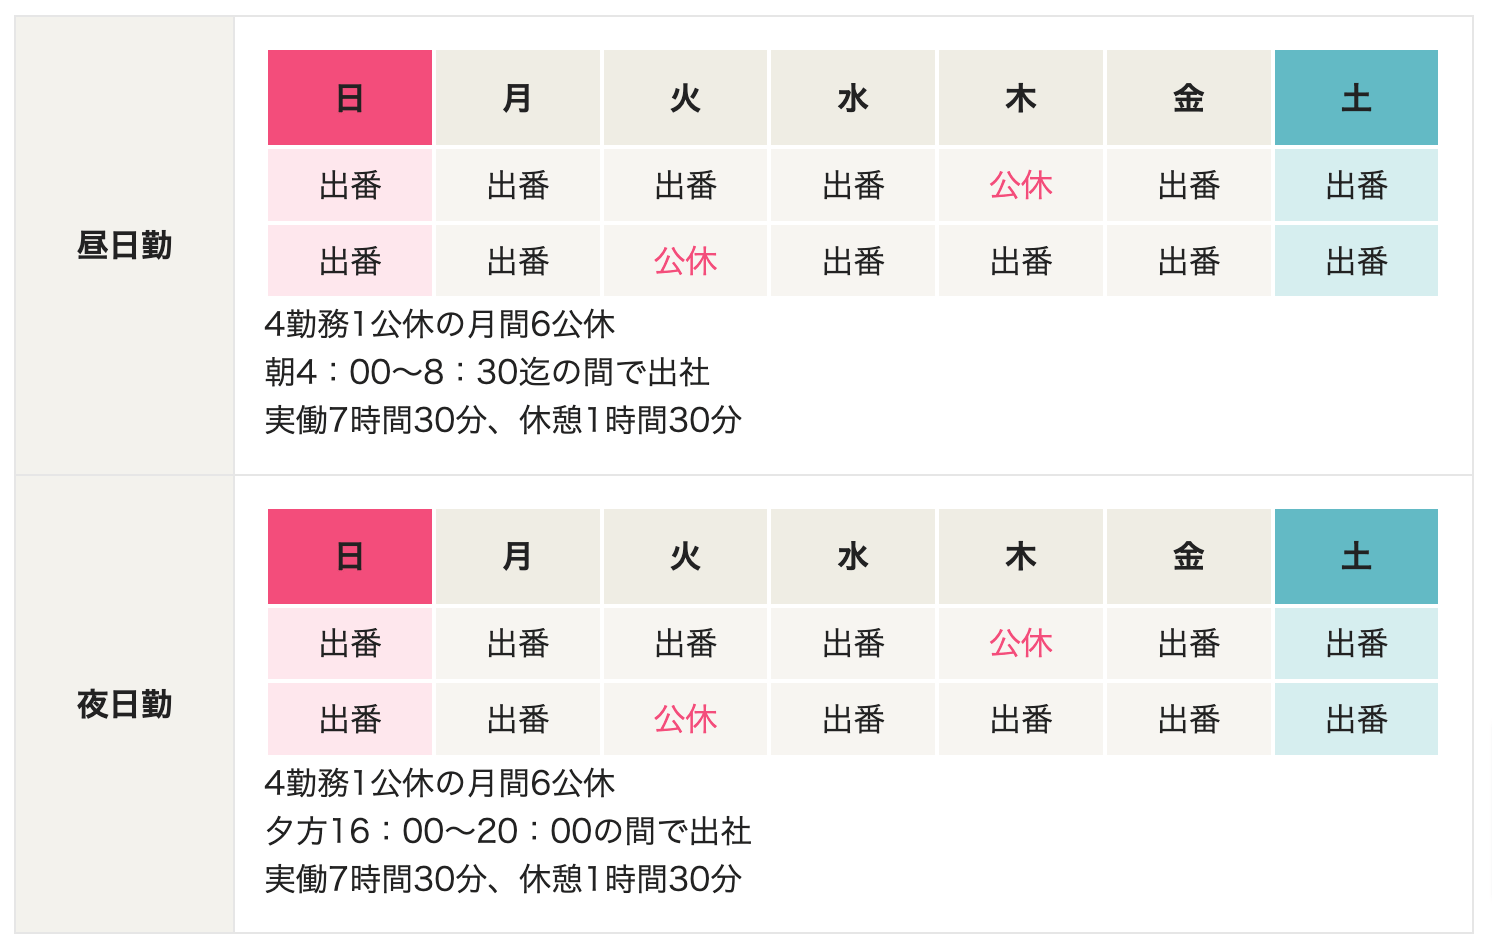 共同交通小樽営業所の勤務カレンダー画像